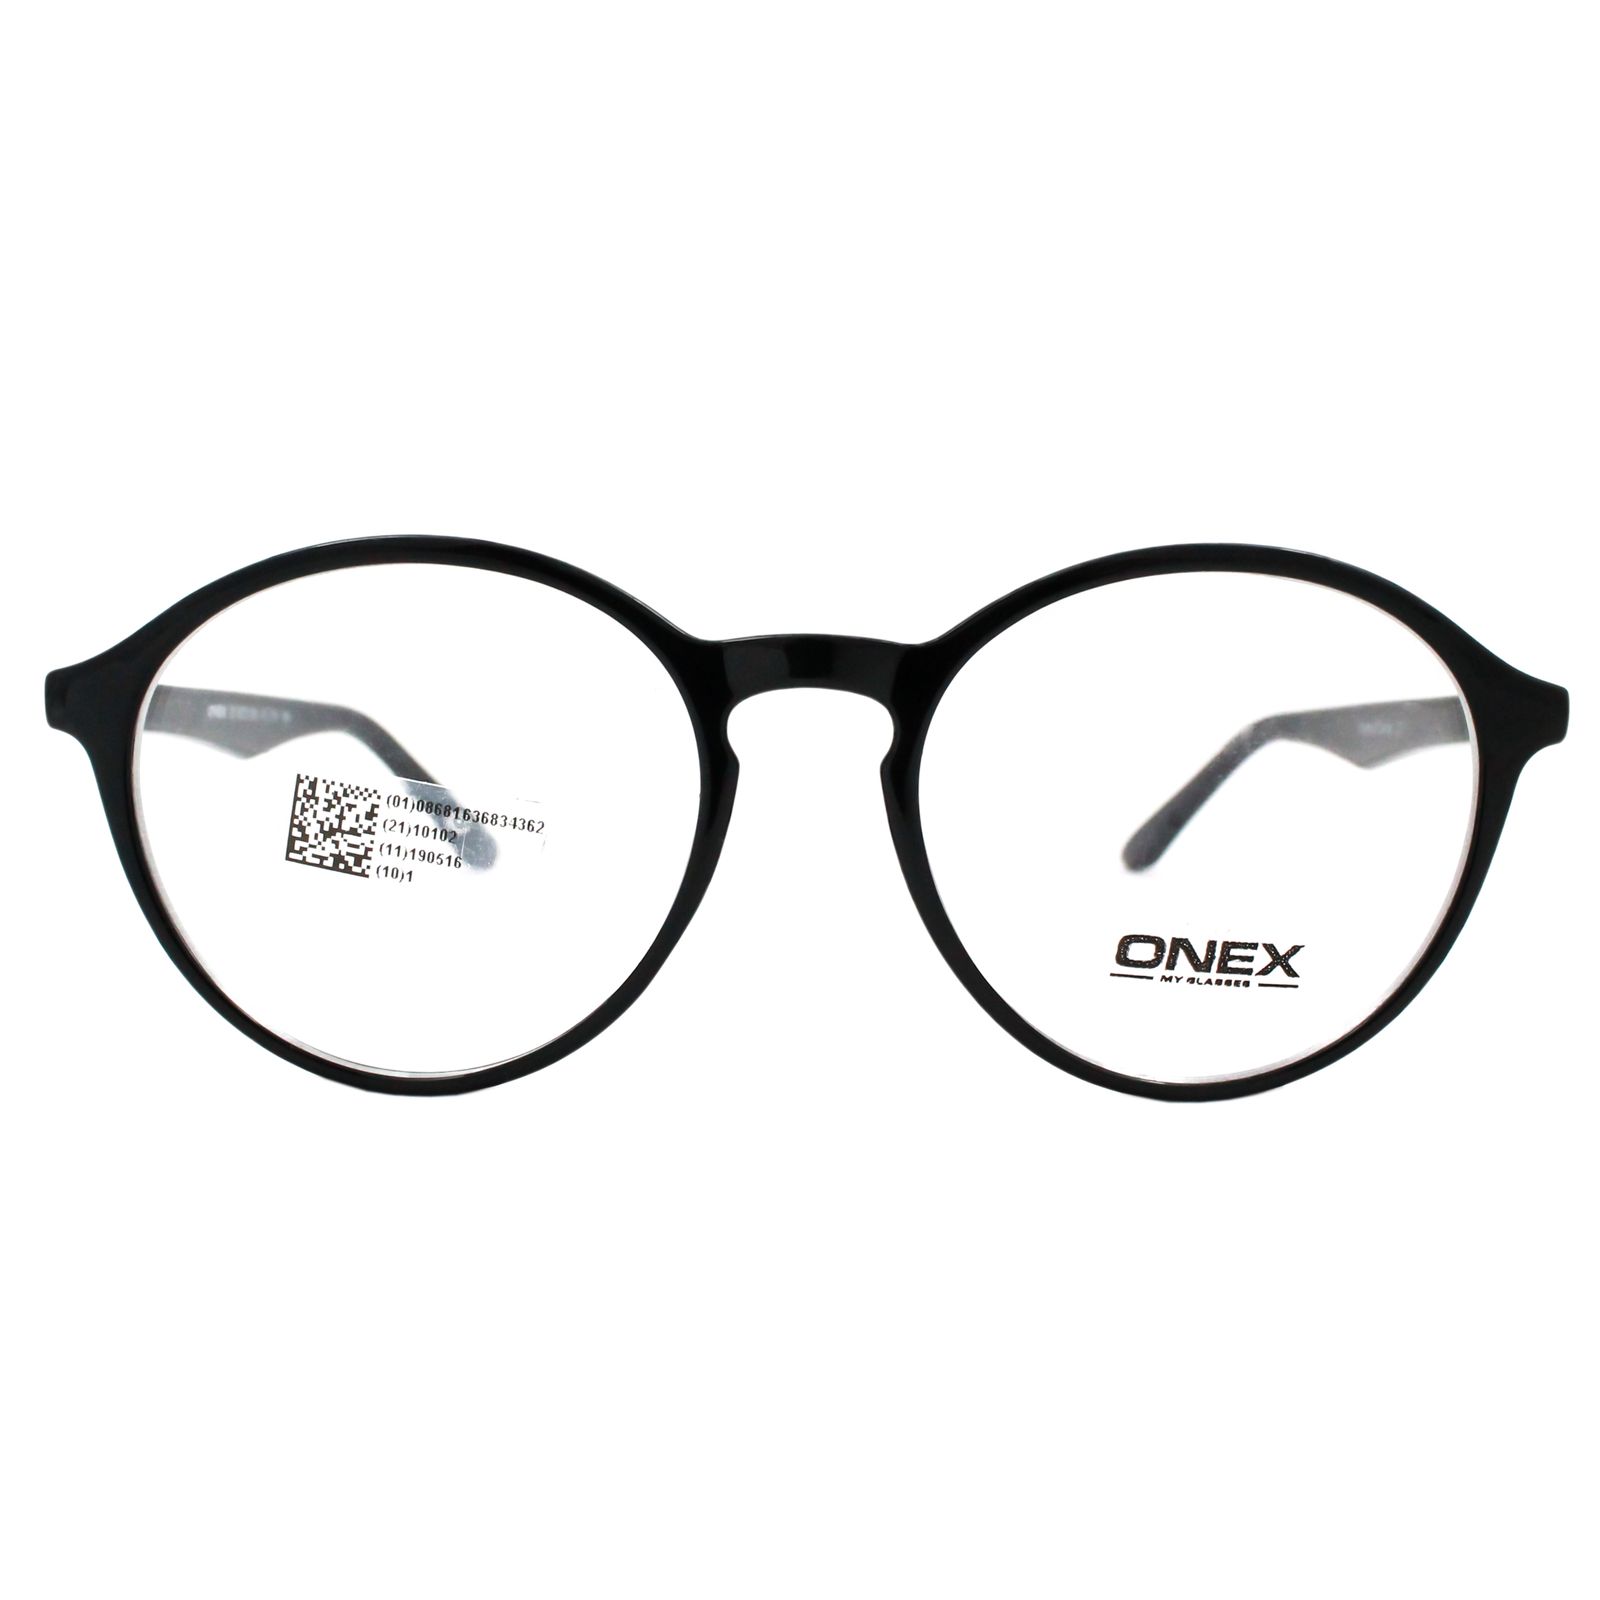 فریم عینک طبی اونکس کد s.1031.d -  - 1